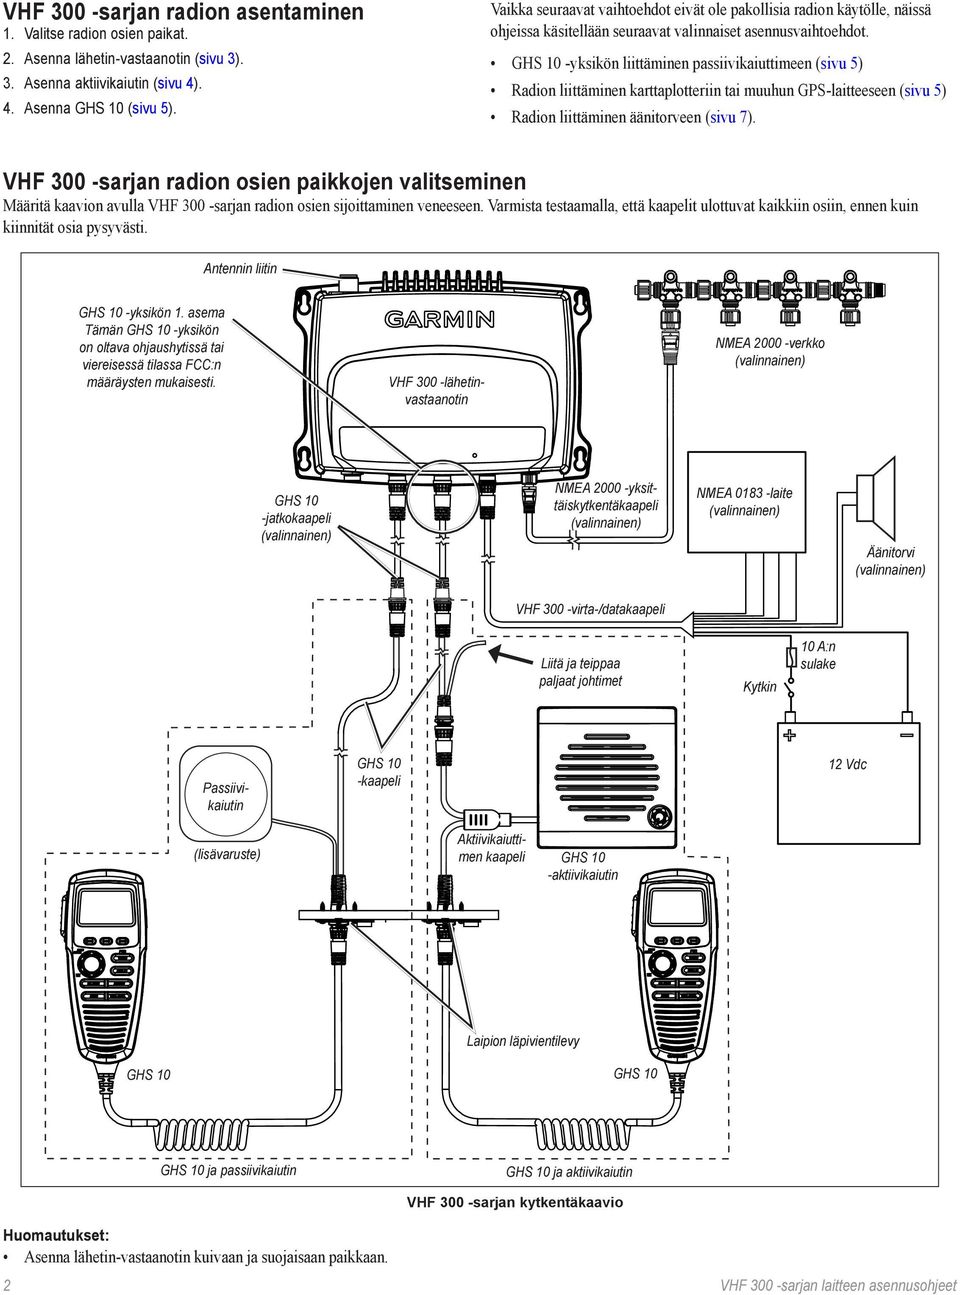 GHS 10 -yksikön liittäminen passiivikaiuttimeen (sivu 5) Radion liittäminen karttaplotteriin tai muuhun GPS-laitteeseen (sivu 5) Radion liittäminen äänitorveen (sivu 7).